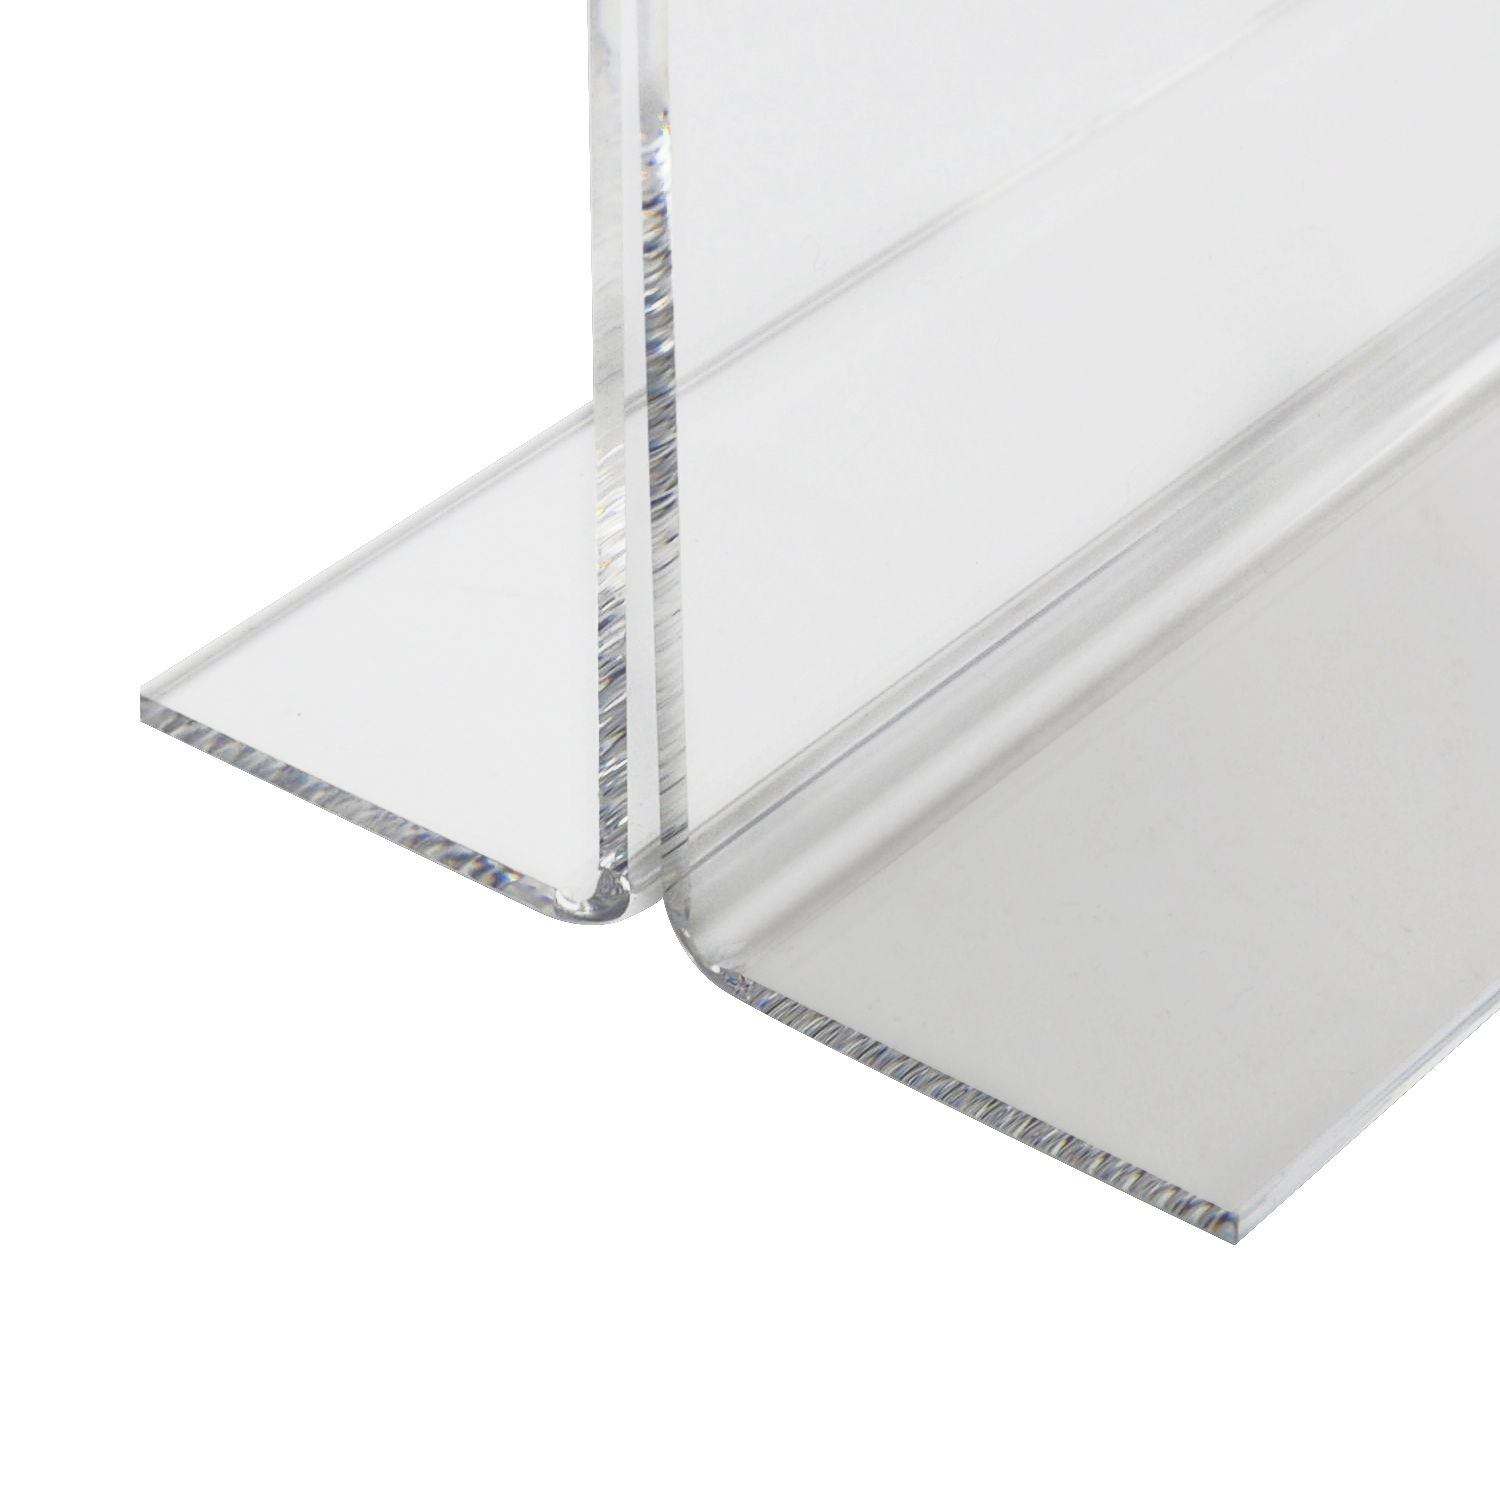 Tischaufsteller oder Menükarte aus Acryl für DIN A6 im Querformat von HMF mit den Maßen 15.3 x 11.2 x 6.7 cm